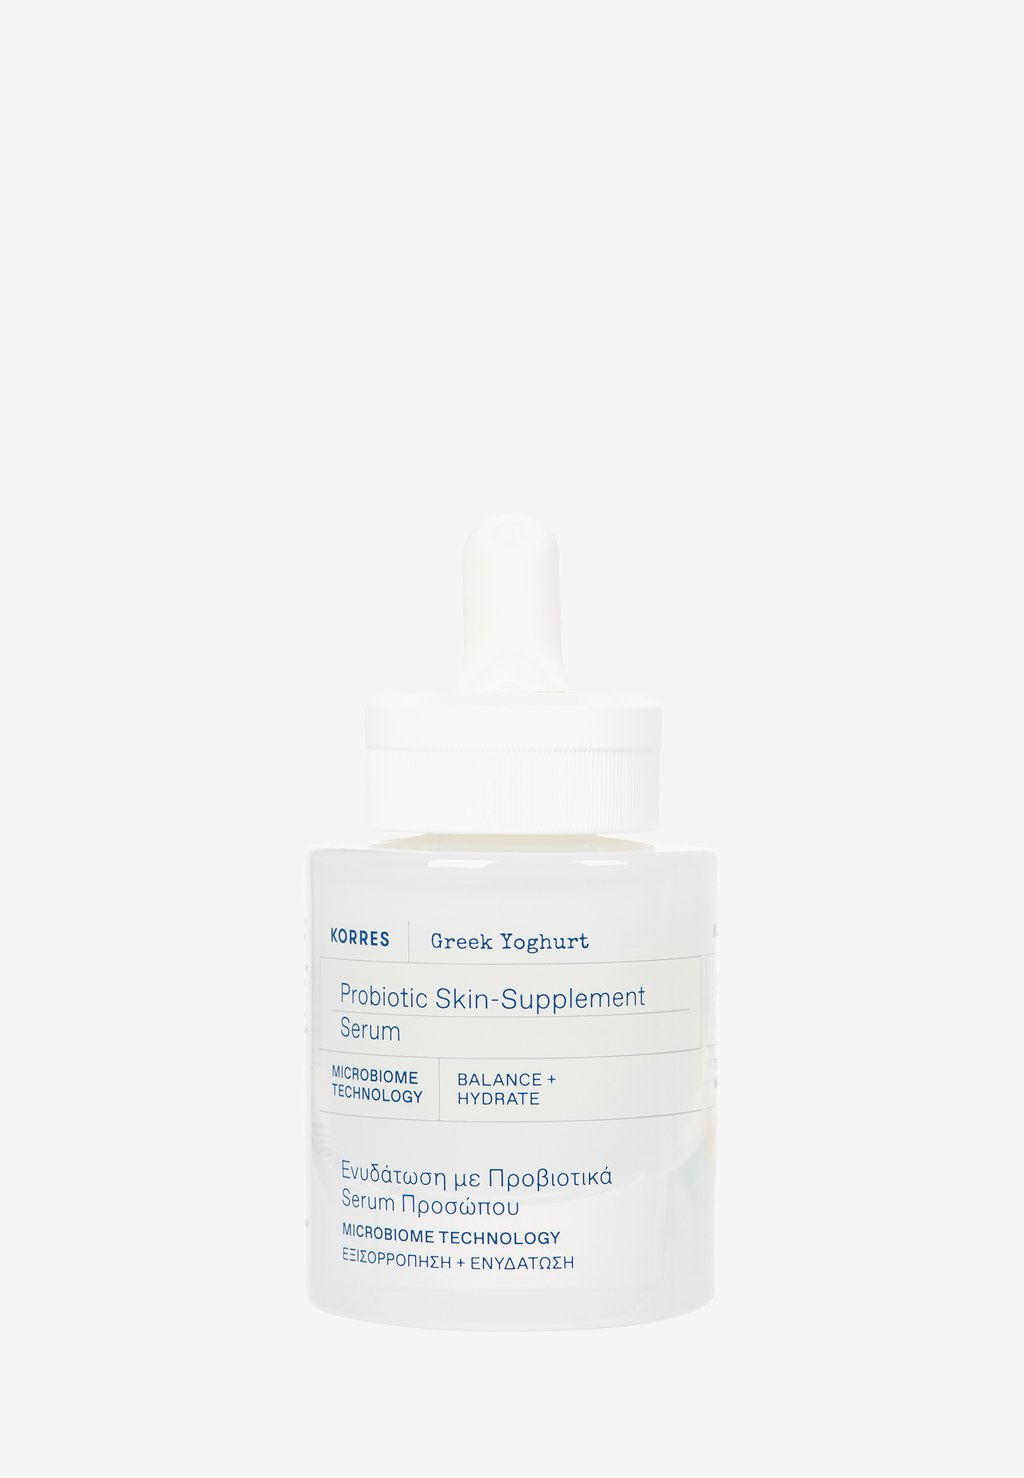 Сыворотка Greek Yoghurt Probiotic Skin-Supplement Serum KORRES сыворотка для лица korres greek yoghurt probiotic skin supplement serum 30 мл